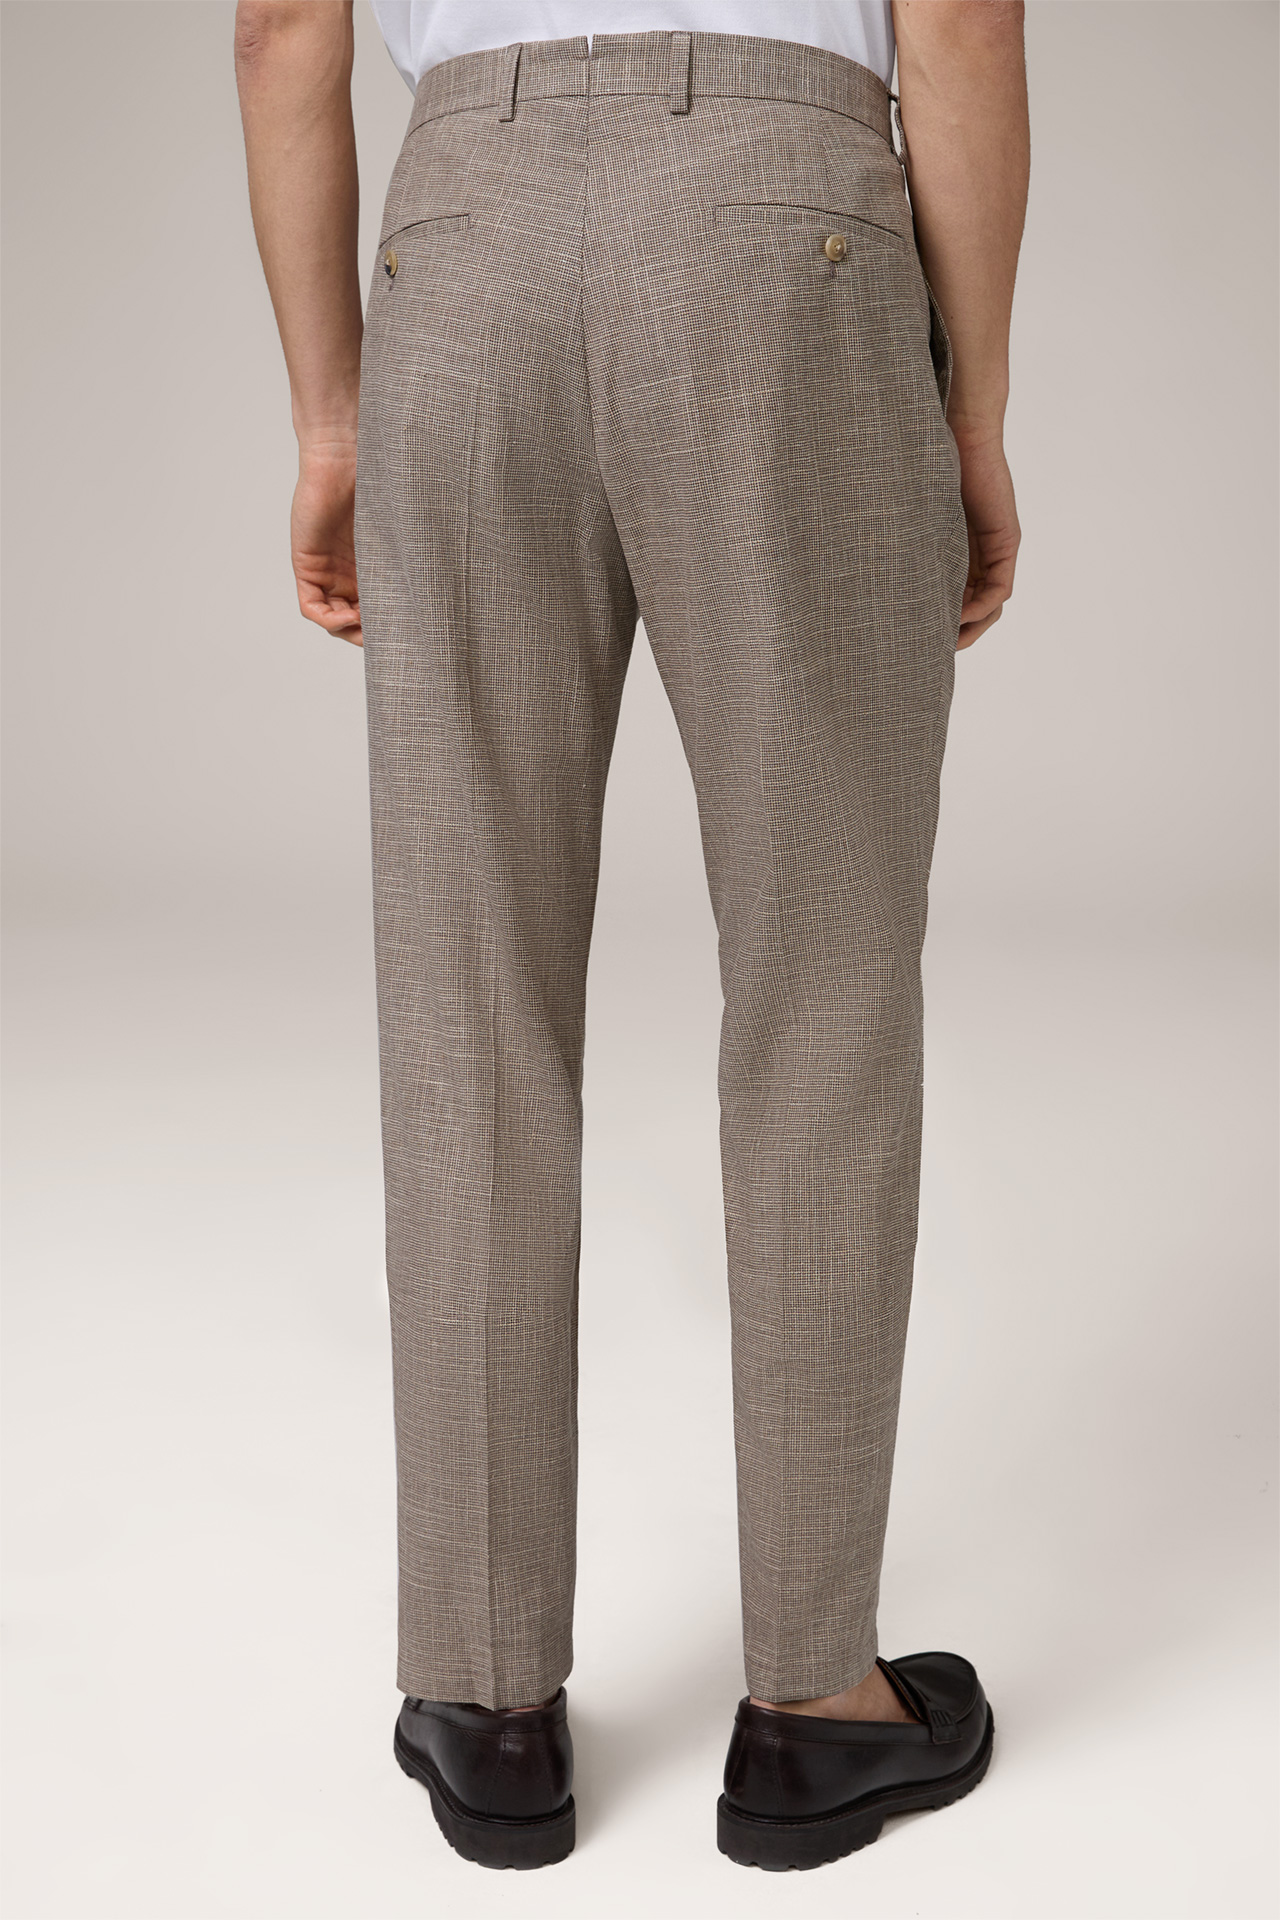 Pantalon à plis modulable Silvi en coton mélangé, en marron et beige à motif